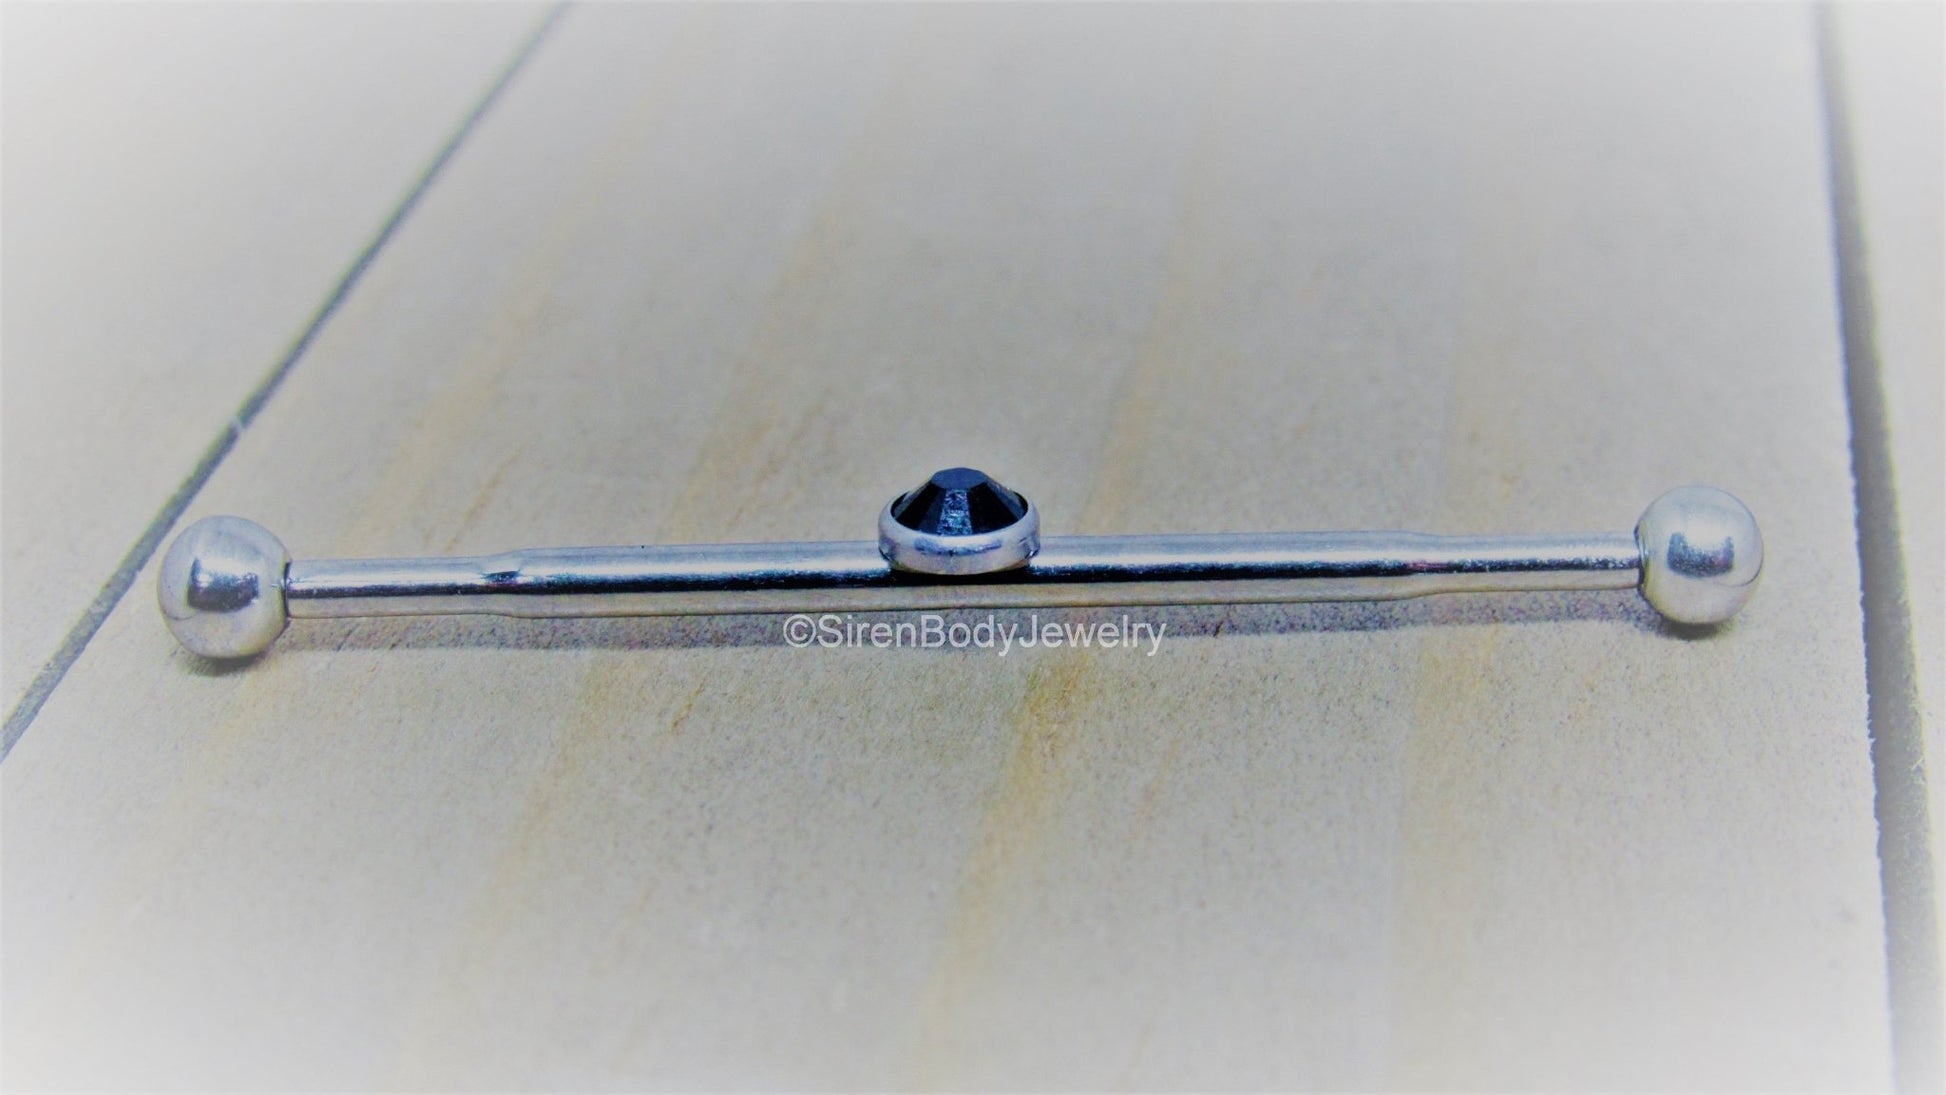 Gem industrial piercing barbell 14g 1 1/4 titanium scaffold bar internal double ear straight bar - SirenBodyJewelry